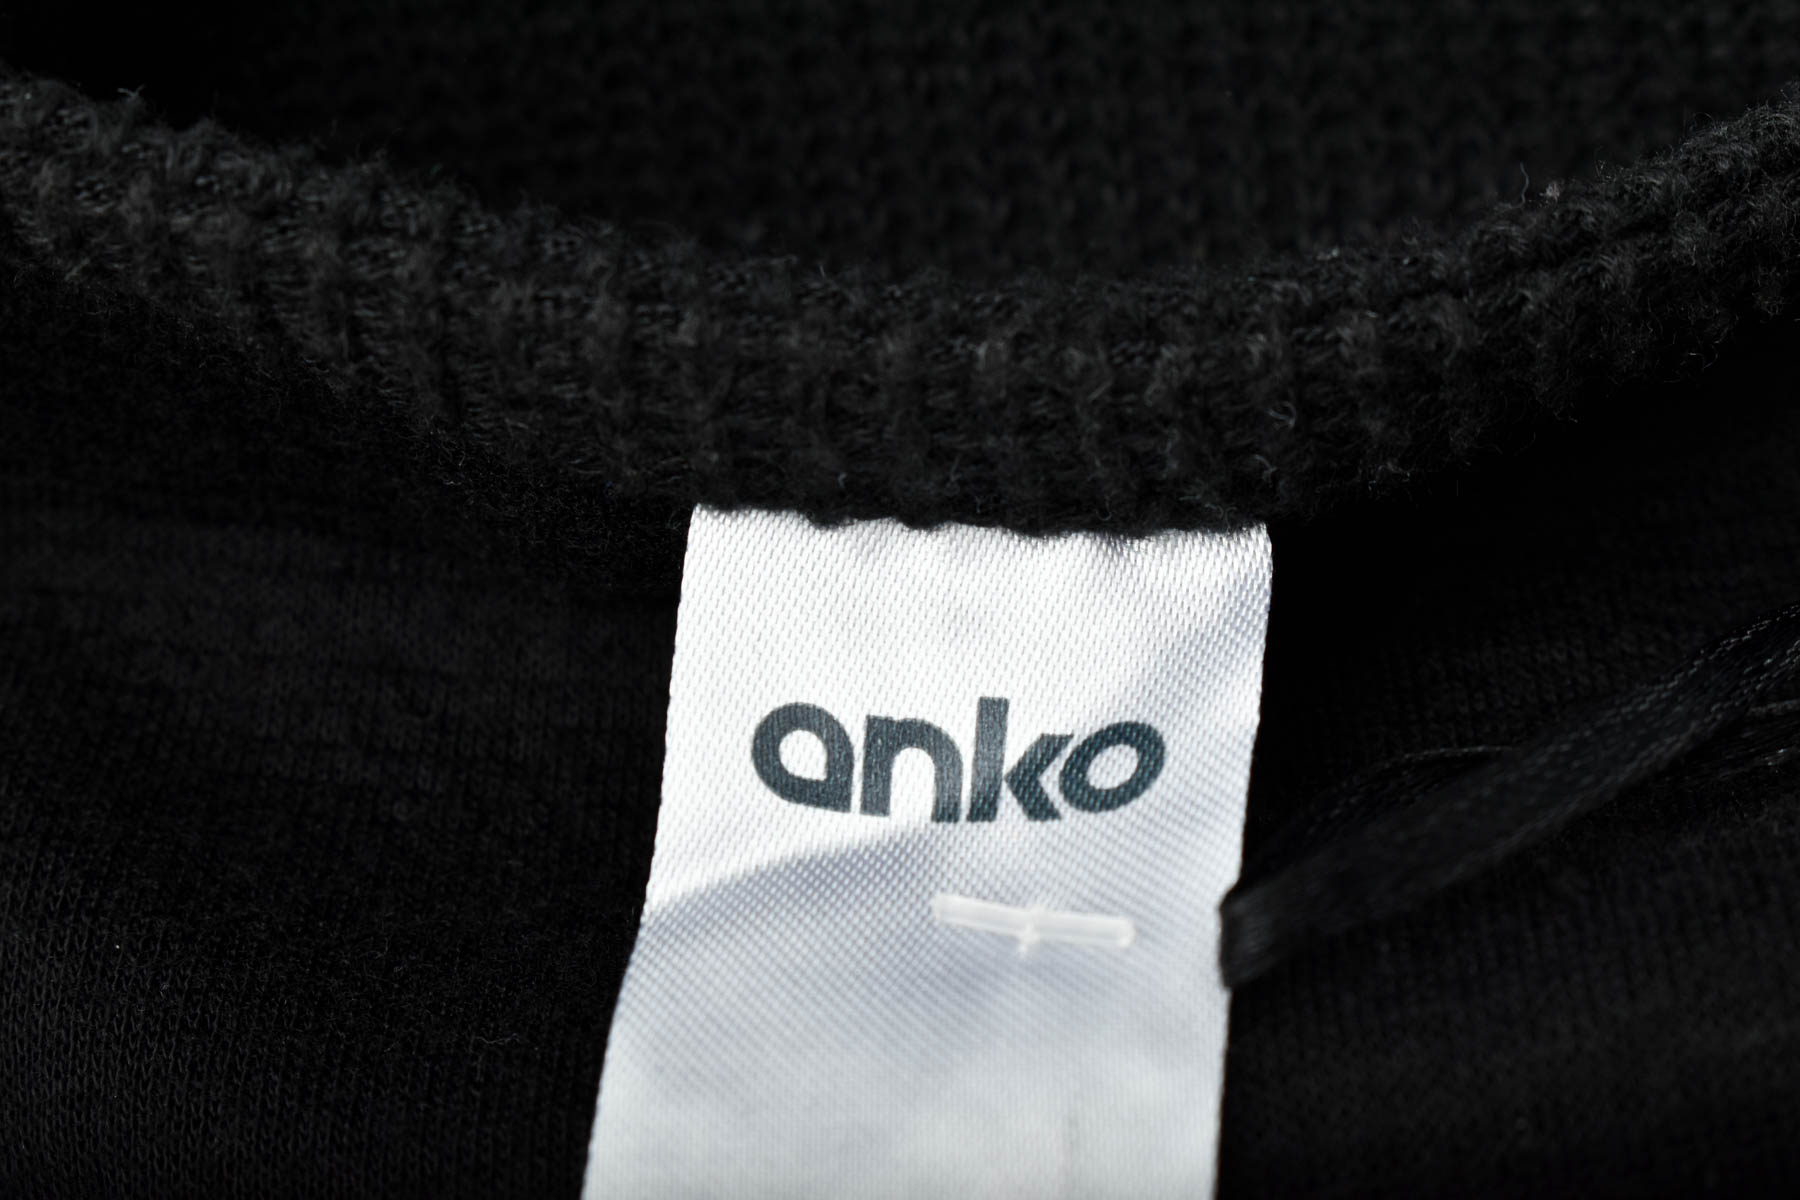 Sweter damski - Anko - 2